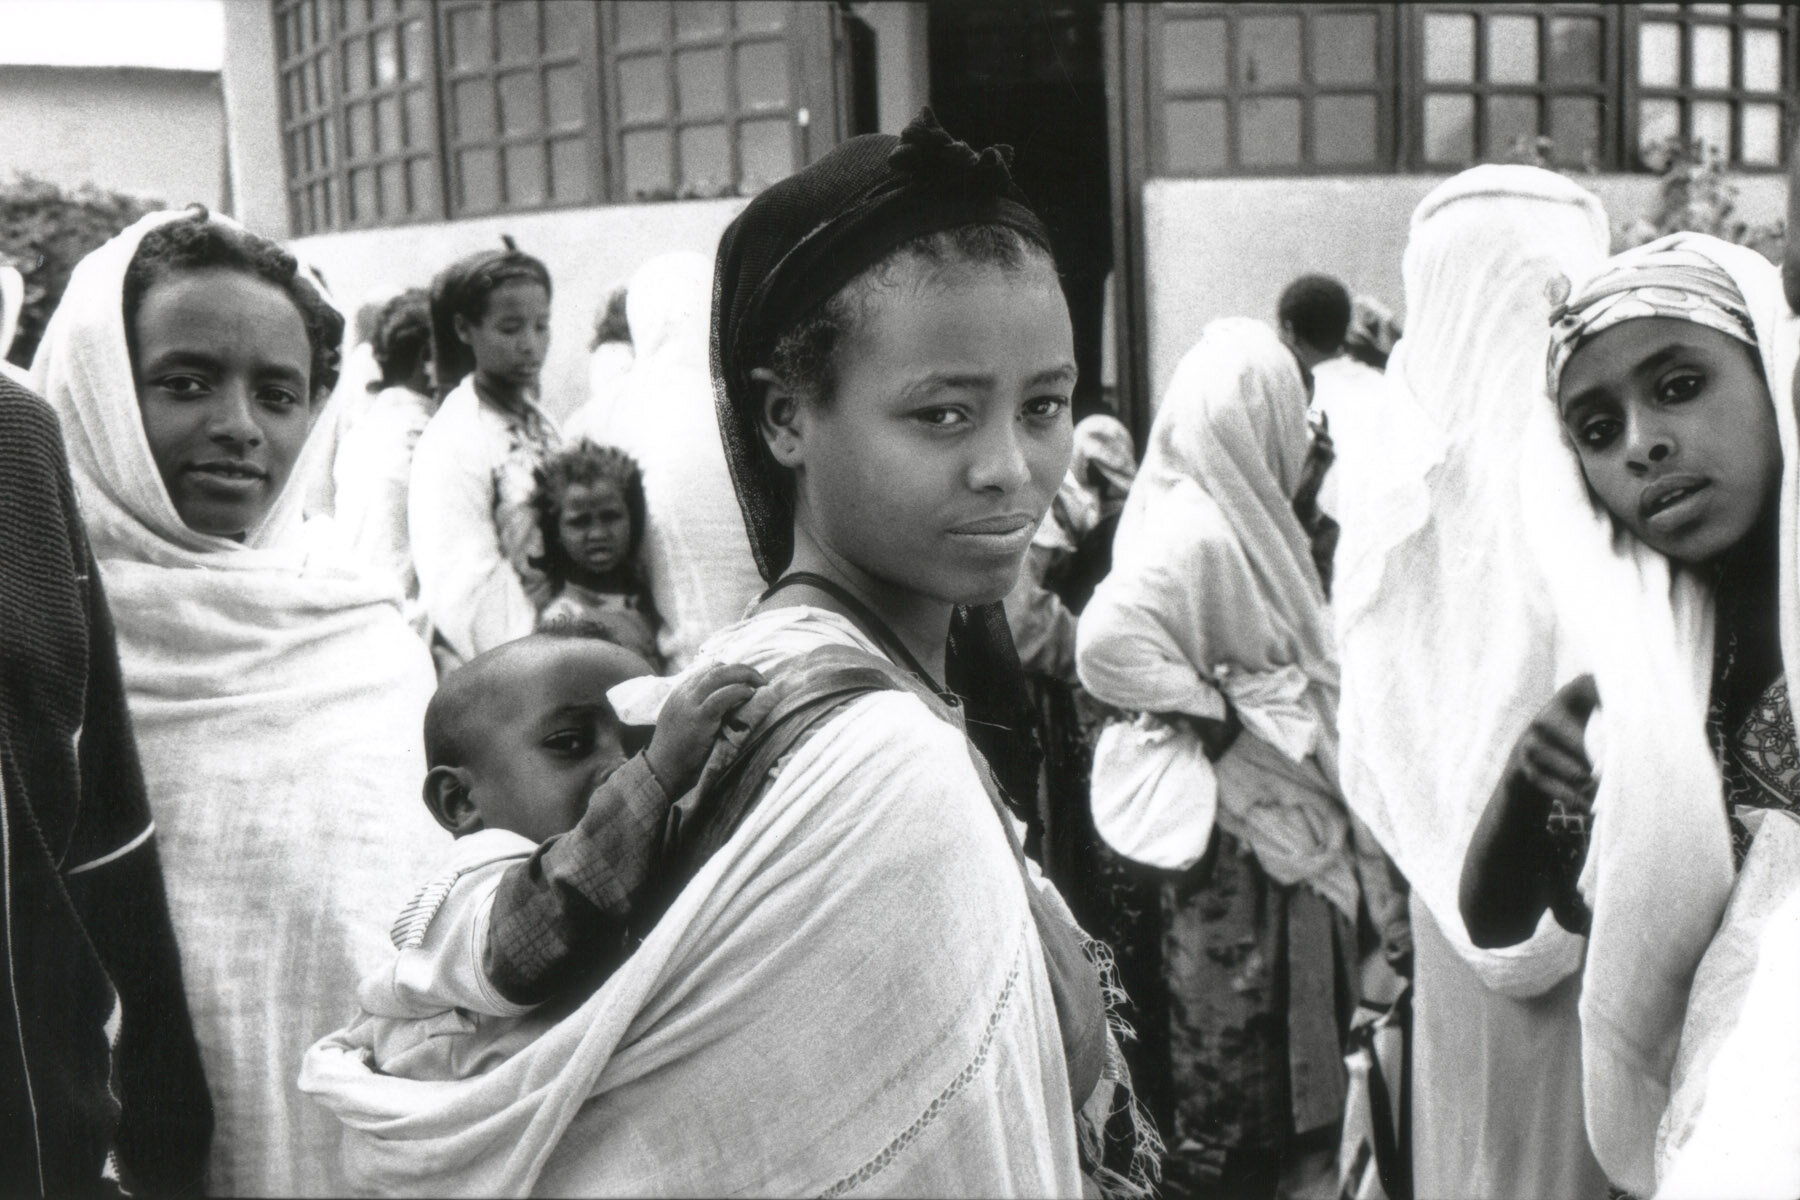 Relief Center, Addis Ababa, Ethiopia